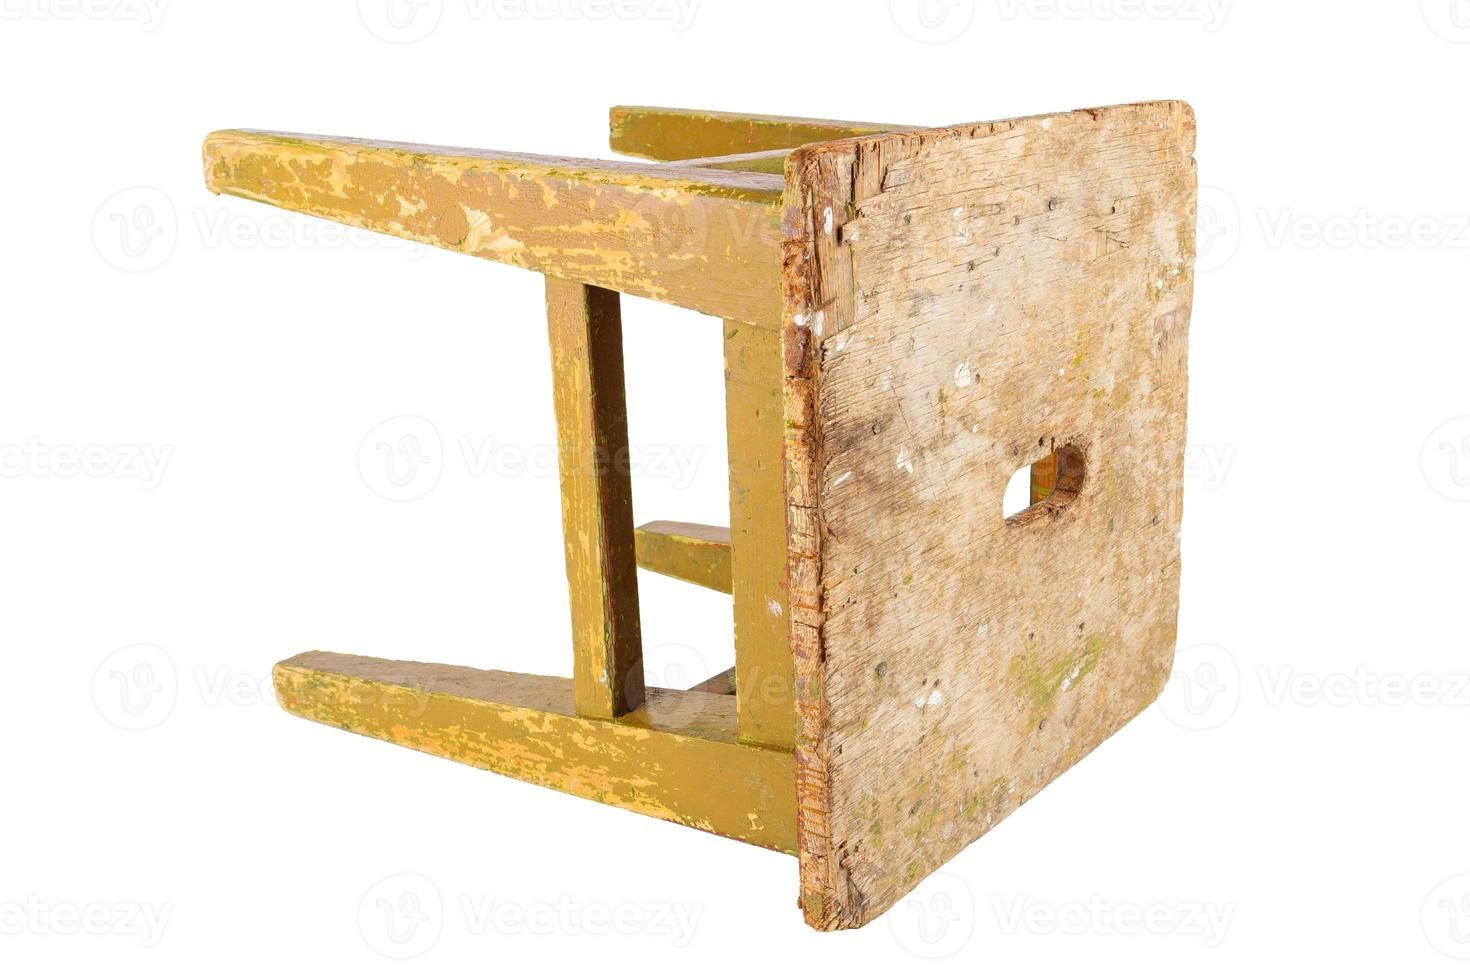 Taburete antiguo de madera con pintura amarilla ocre desconchada. silla estilo loft aislada en un fondo blanco. foto